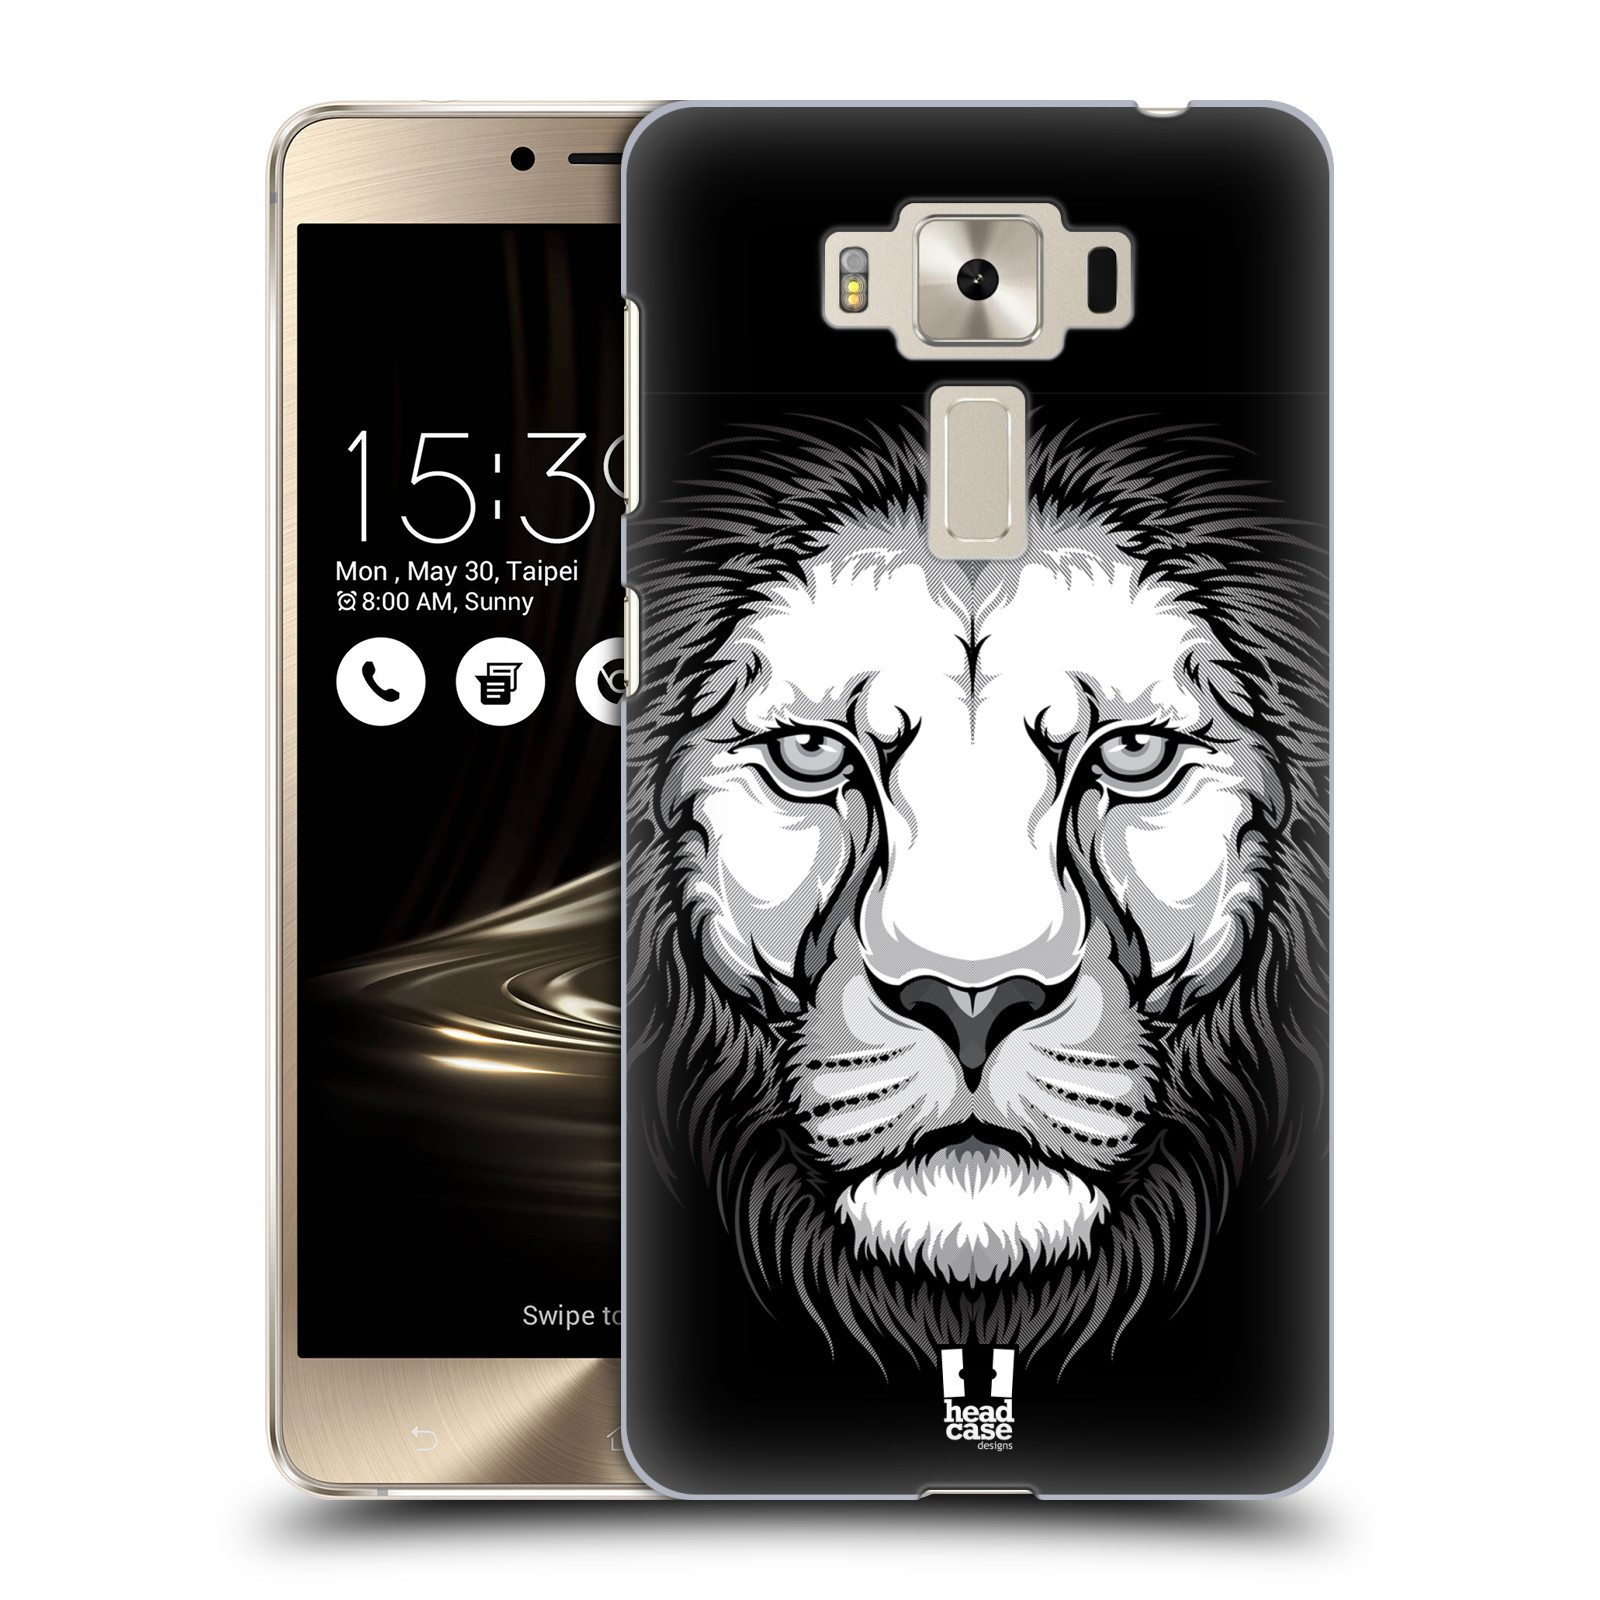 HEAD CASE plastový obal na mobil Asus Zenfone 3 DELUXE ZS550KL vzor Zvíře kreslená tvář lev